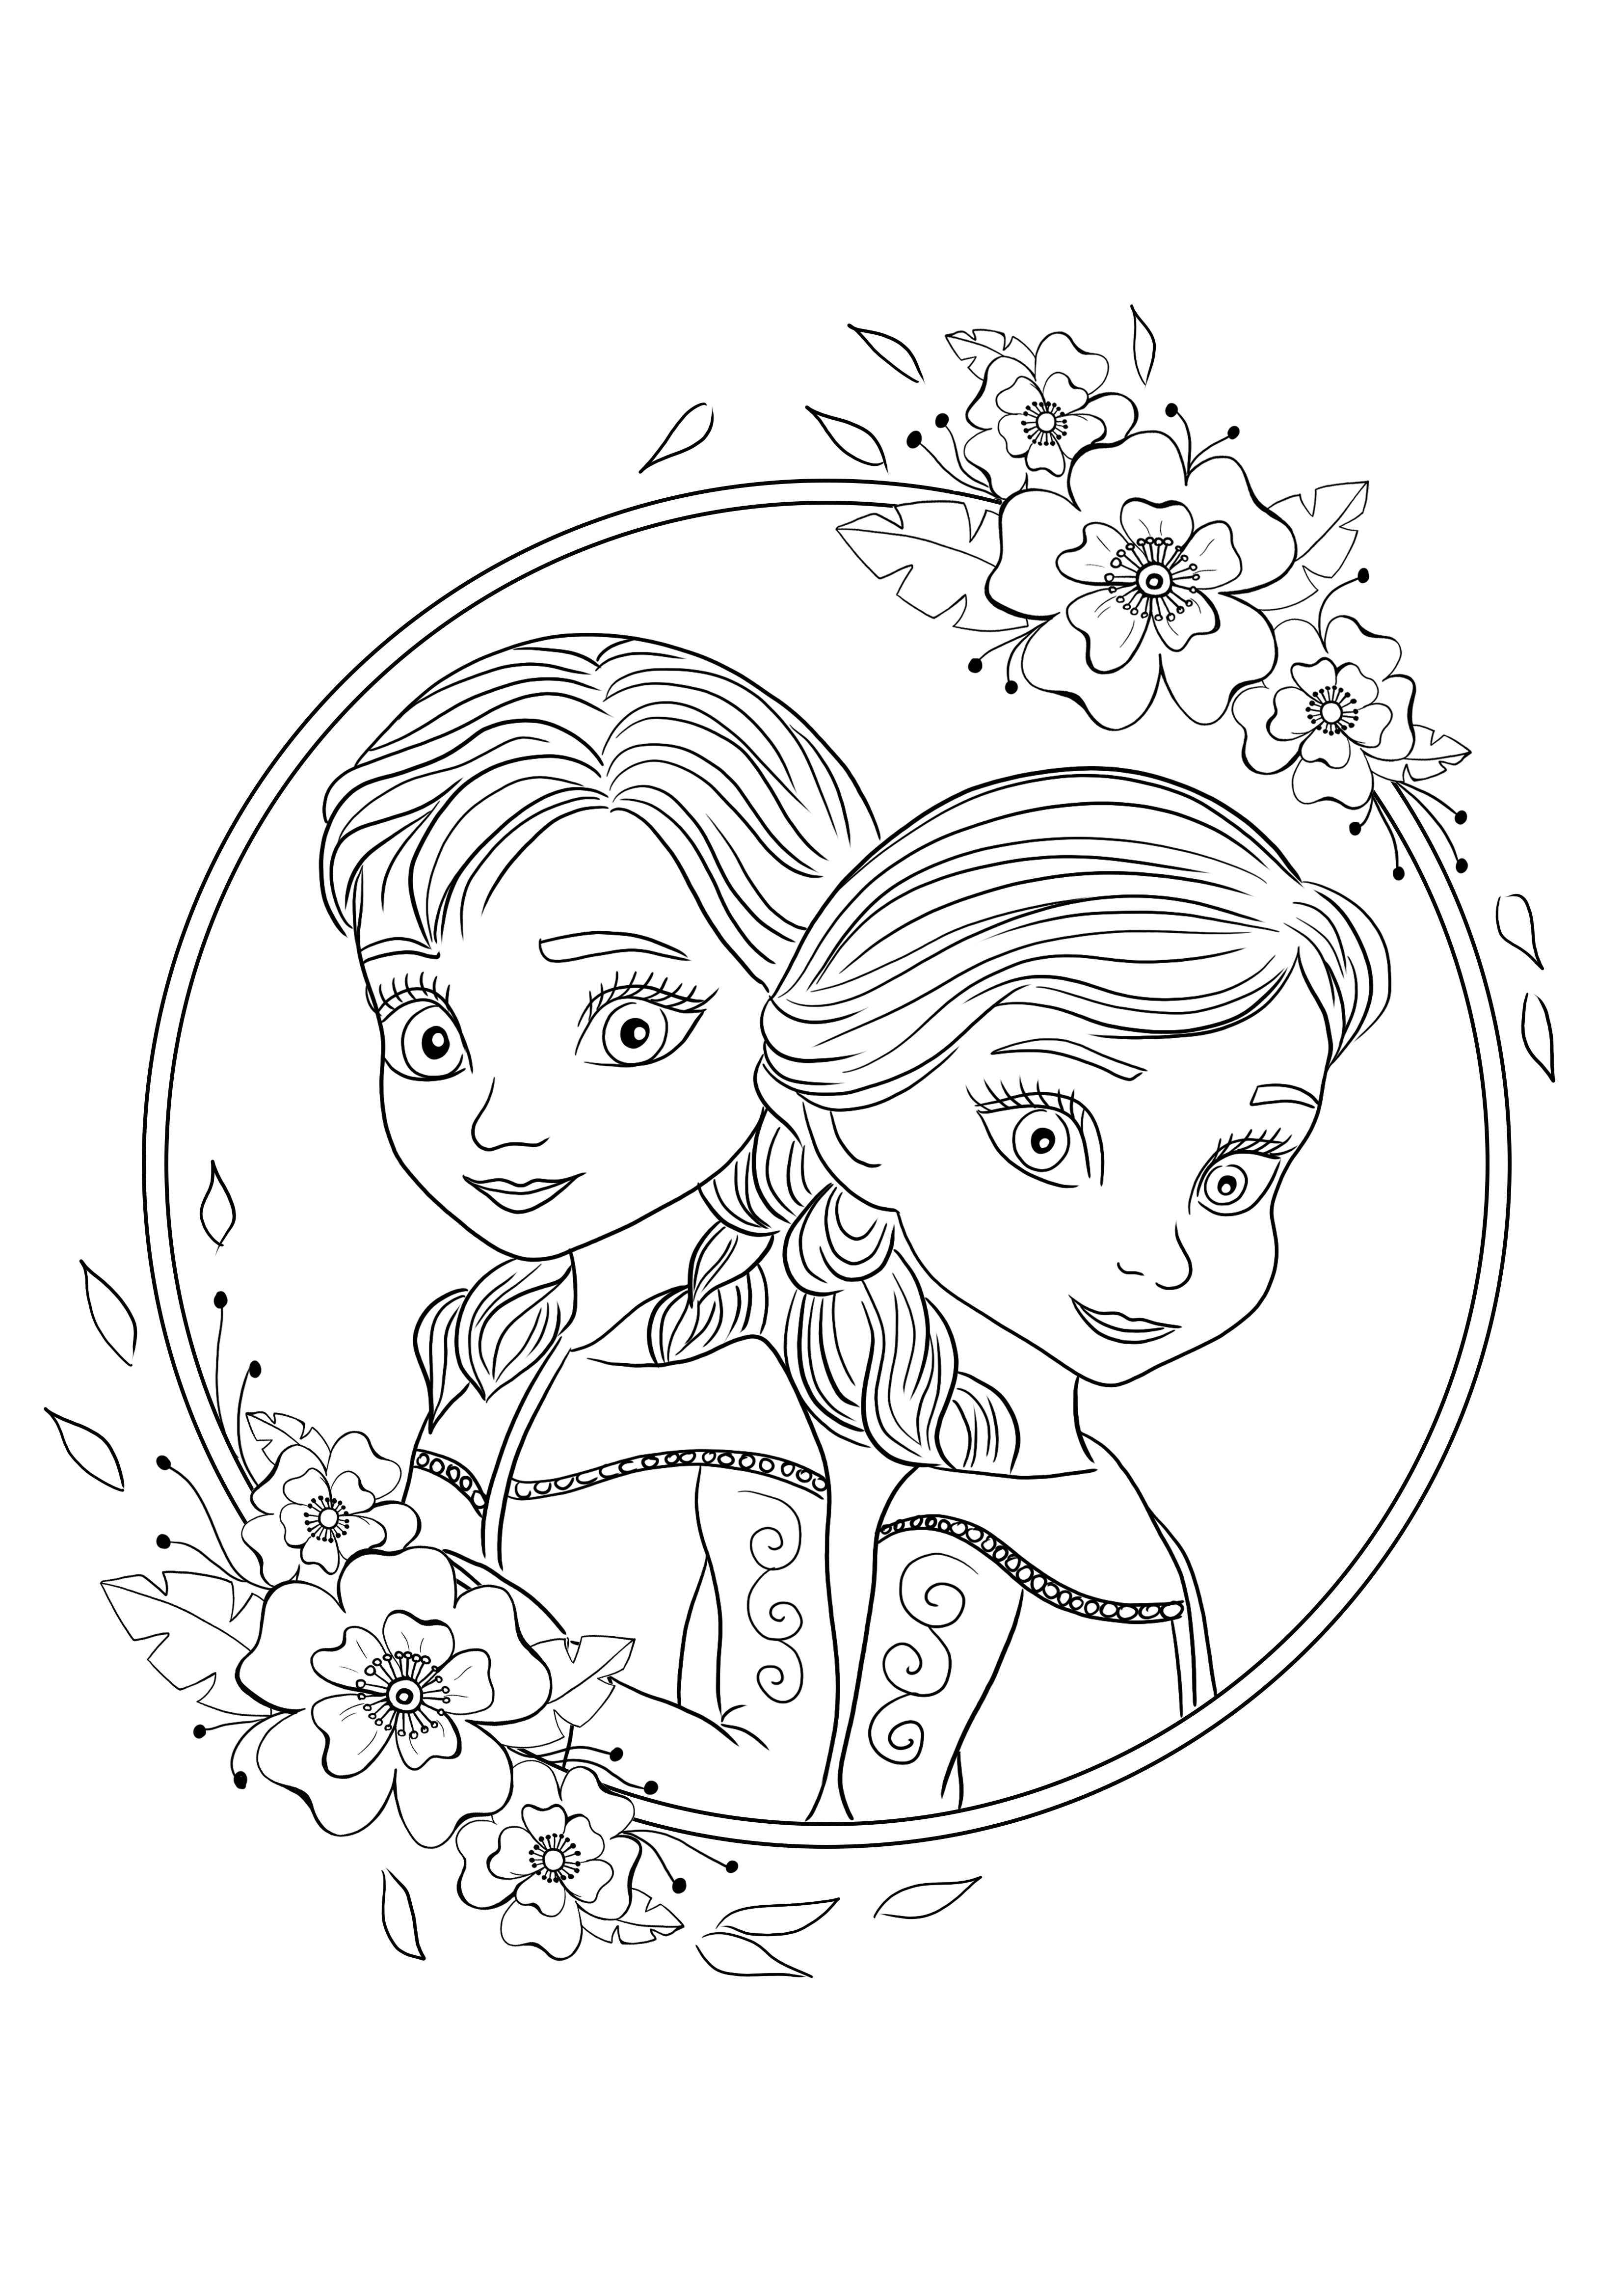 İndirmek için genç Elsa ve Ana'nın ücretsiz yazdırılabilir boyama resmi